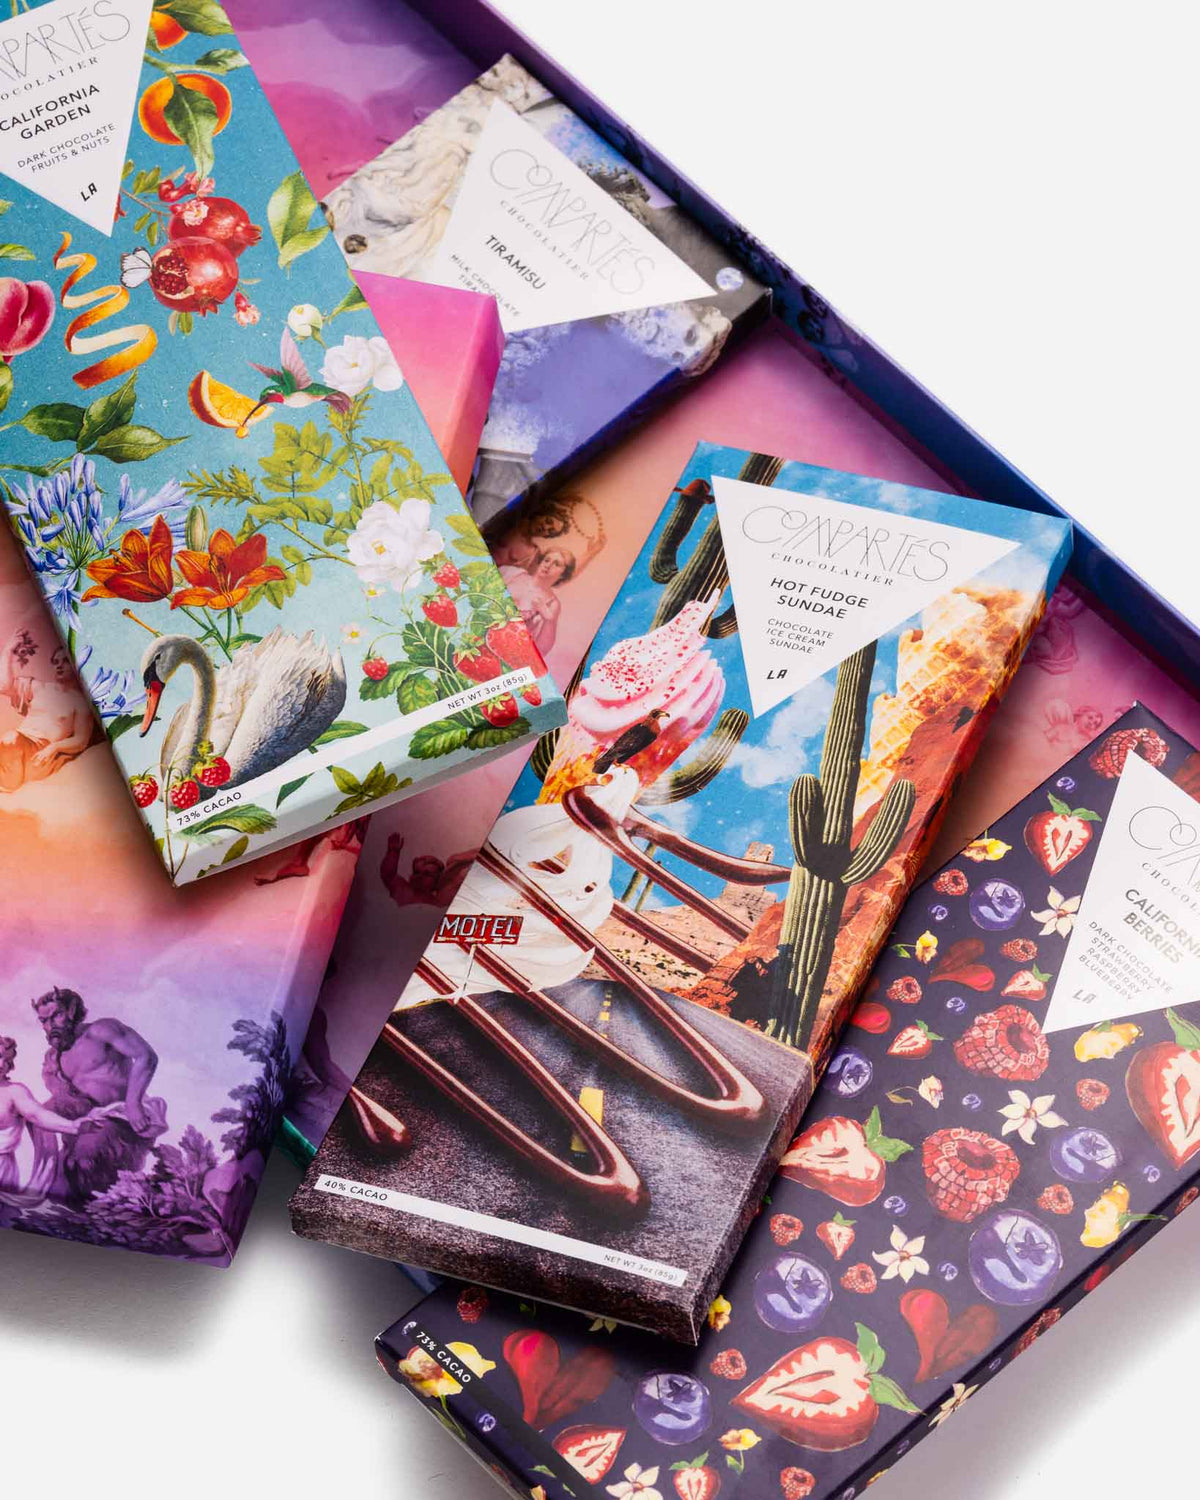 Chocolate Is Art - Gourmet Chocolate Bars Gift Box